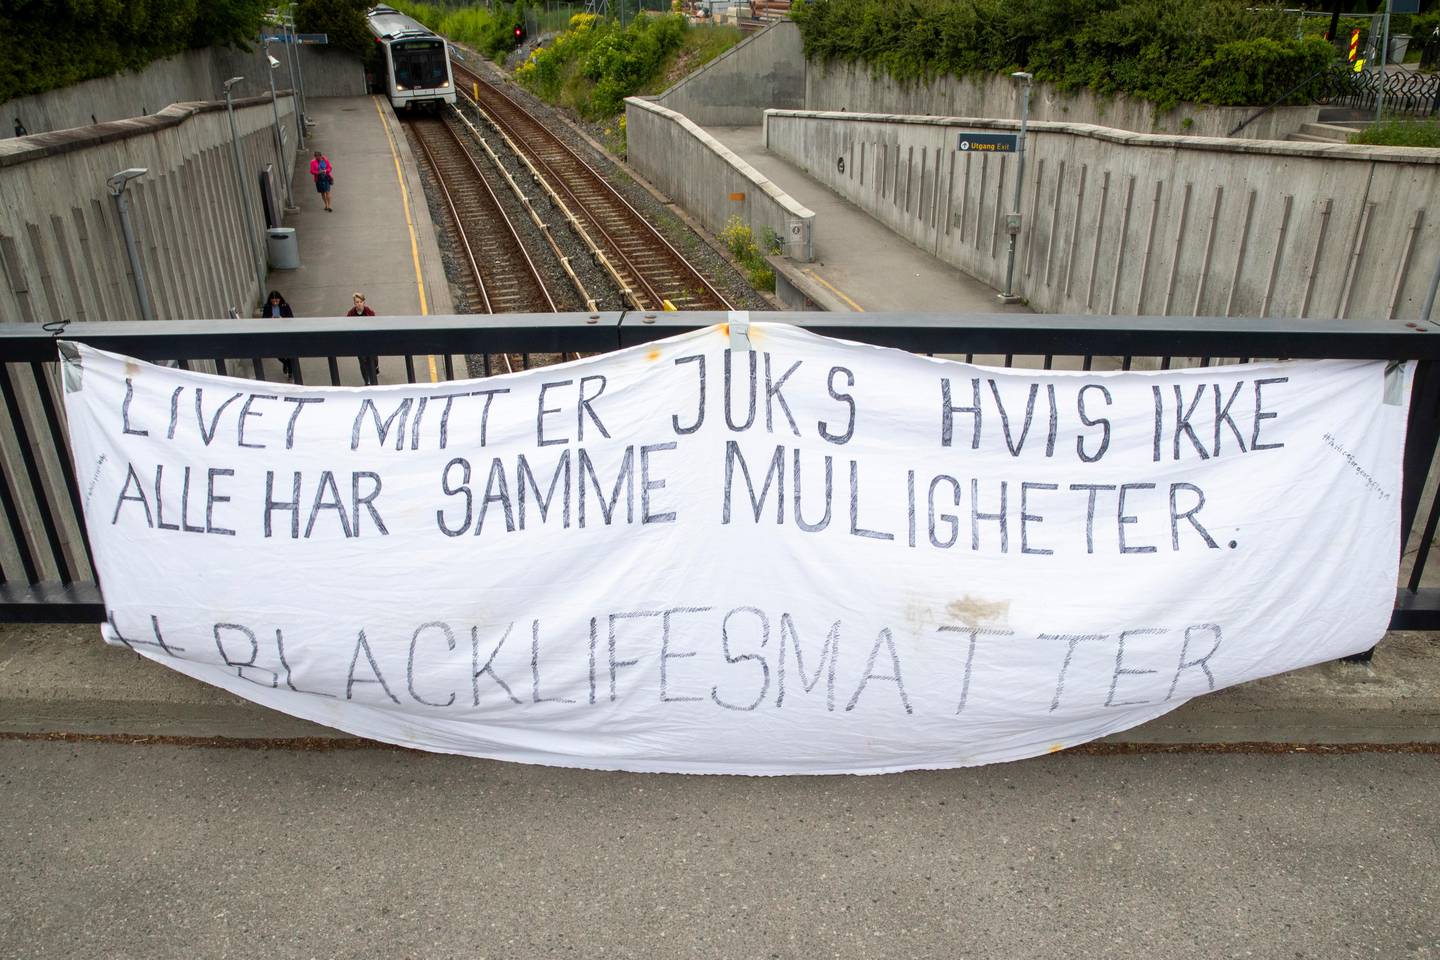 Oslo 20200605. 
Politiet har gjort klar sperrematerial i forkant av den annonserte demonstrasjonen fredag ettermiddag. Plakat: Black lifes matter.

Foto: Terje Pedersen / NTB scanpix